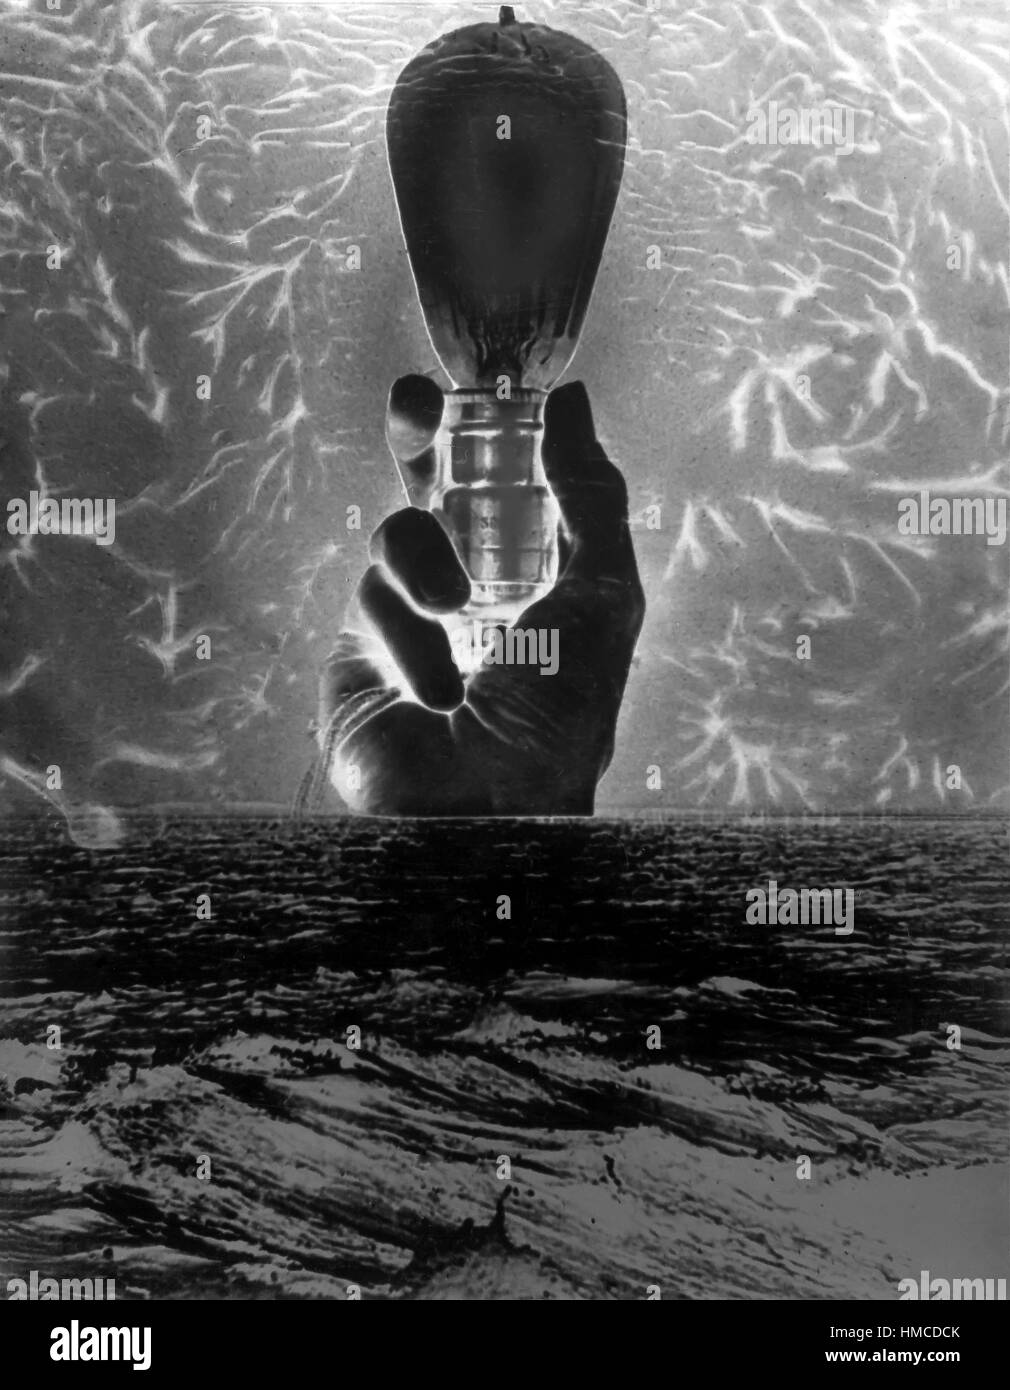 Collage créatif noir et blanc d'une main tenant une ampoule vintage avec les rayons de lumière autour de lui. Banque D'Images